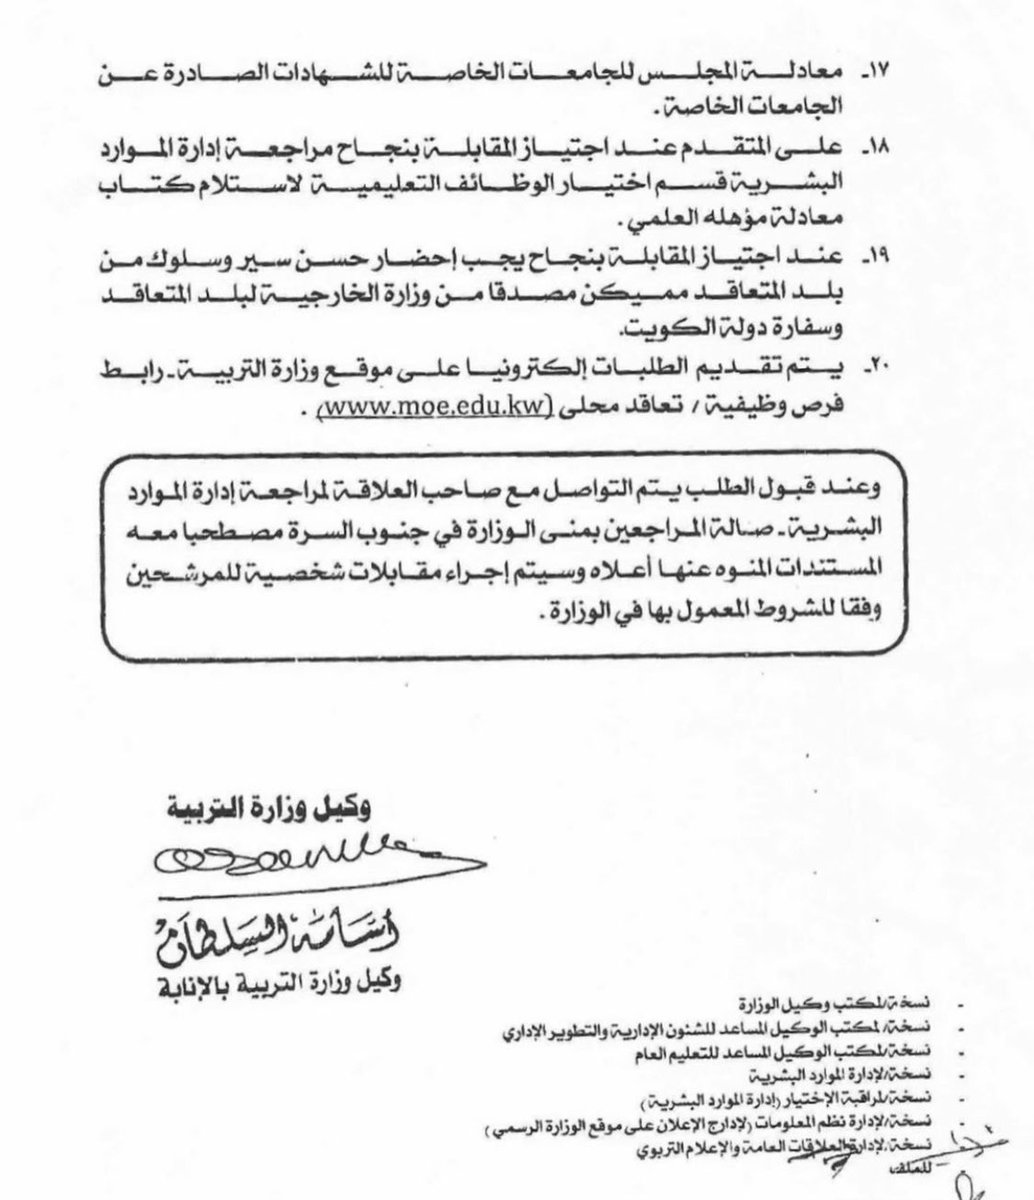 اعلان من وزارة التربية
عن توظيف معلمين و معلمات 
من غير الكويتيين